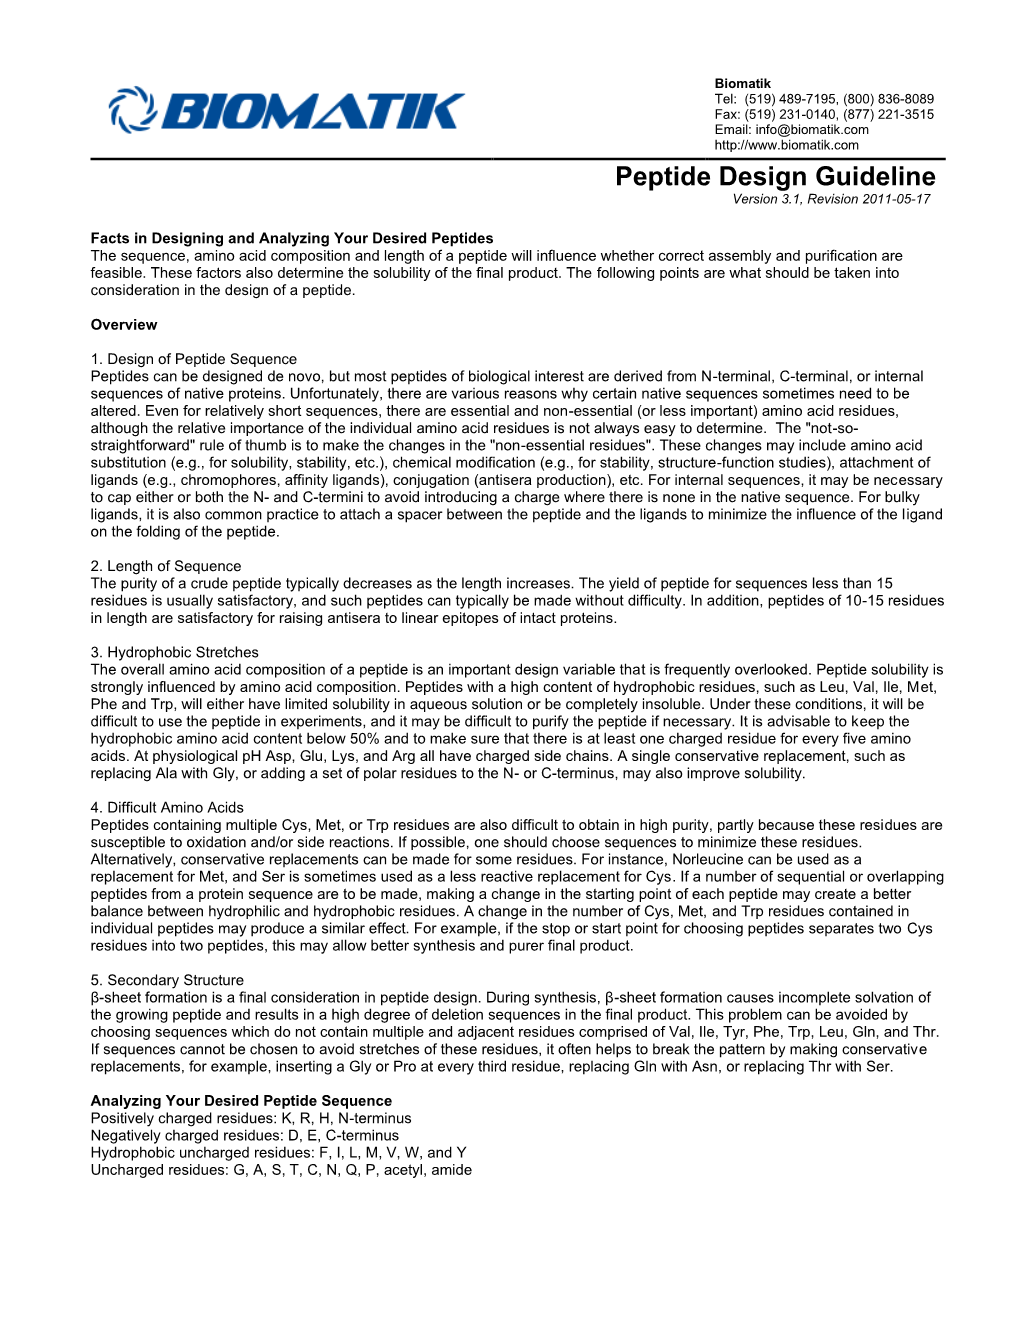 Peptide Design Guideline Version 3.1, Revision 2011-05-17